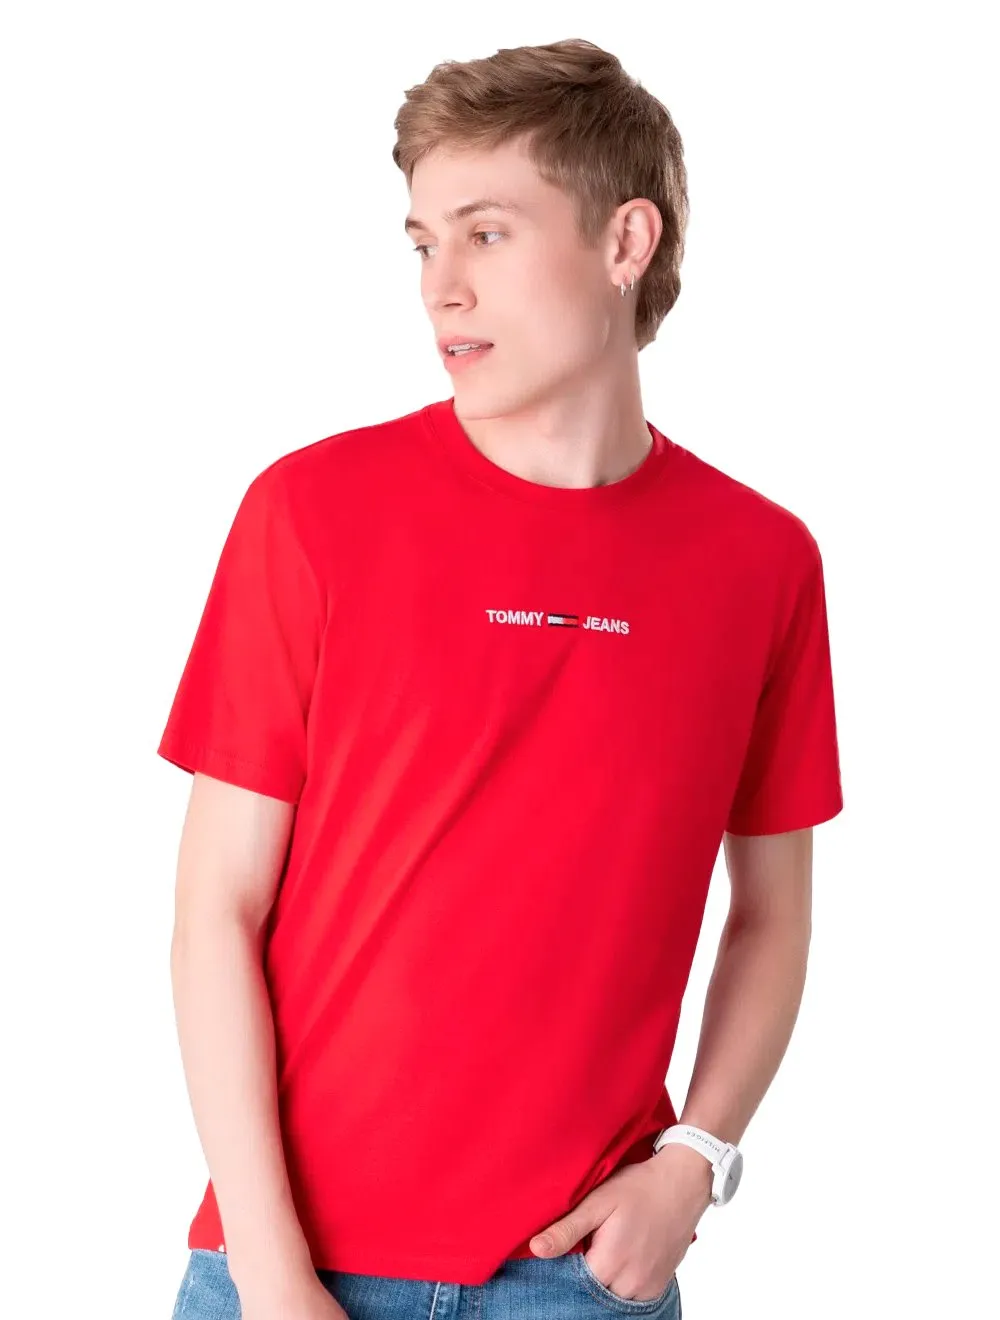 Camiseta Tommy Jeans Masculina Small Logo Text Vermelha